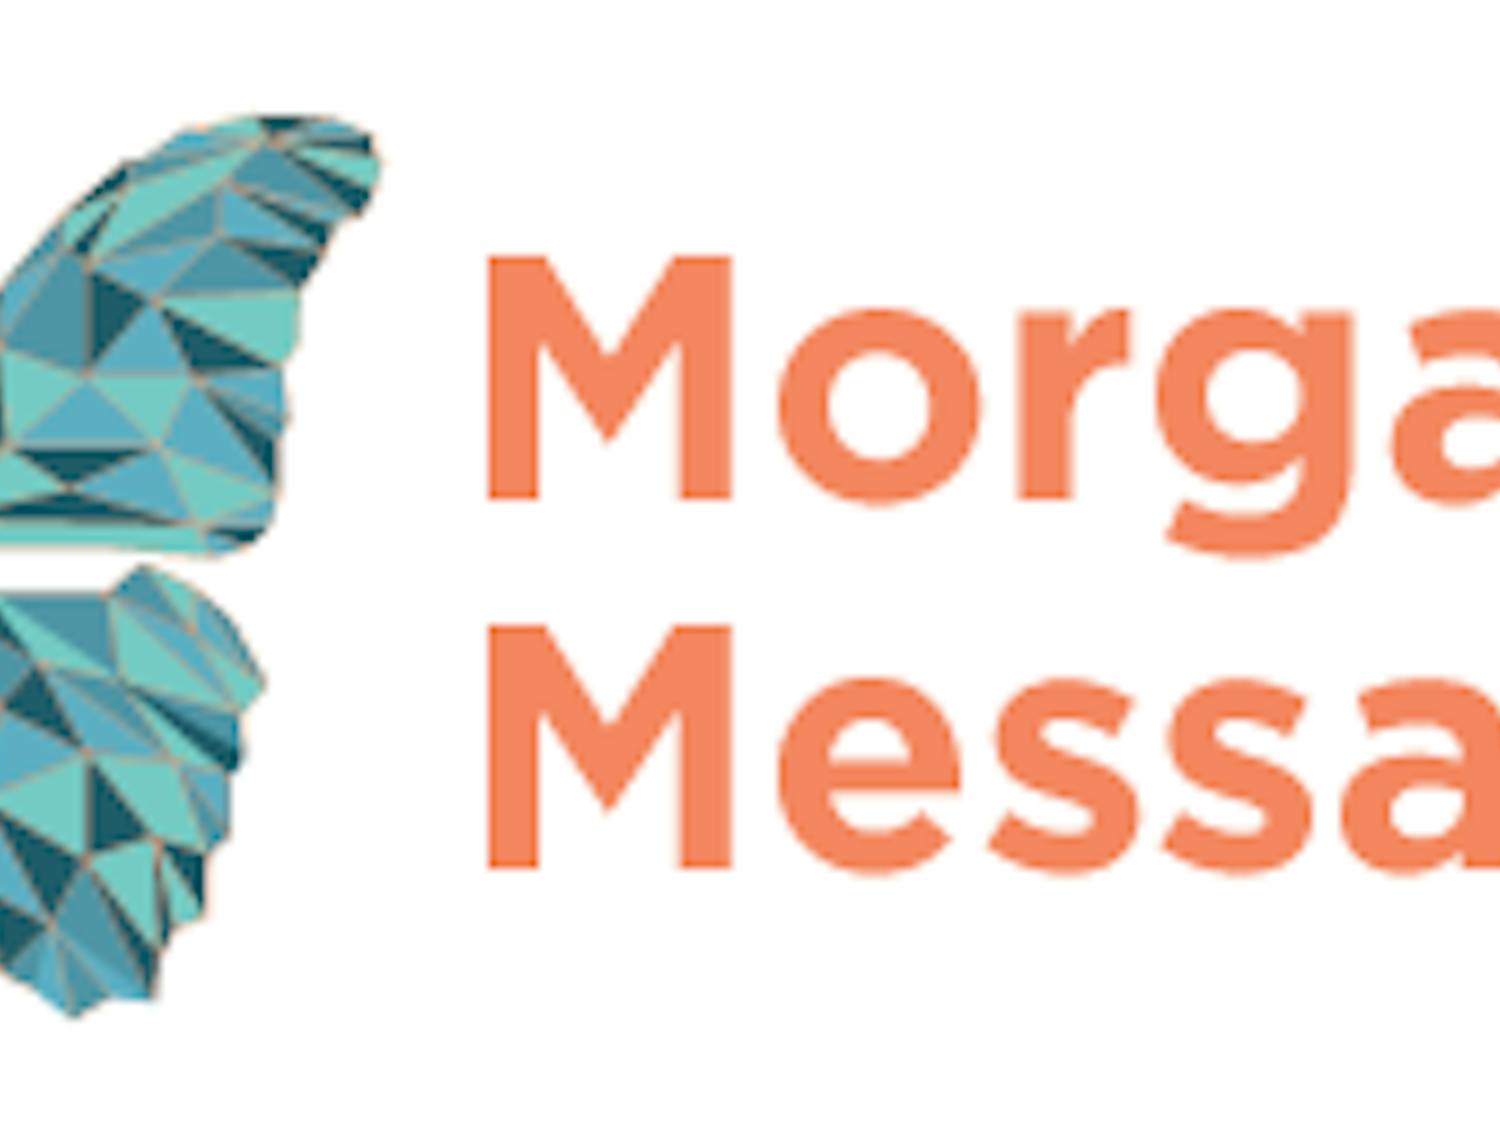 Morgans-Message-LOGO-334x128-trans.png